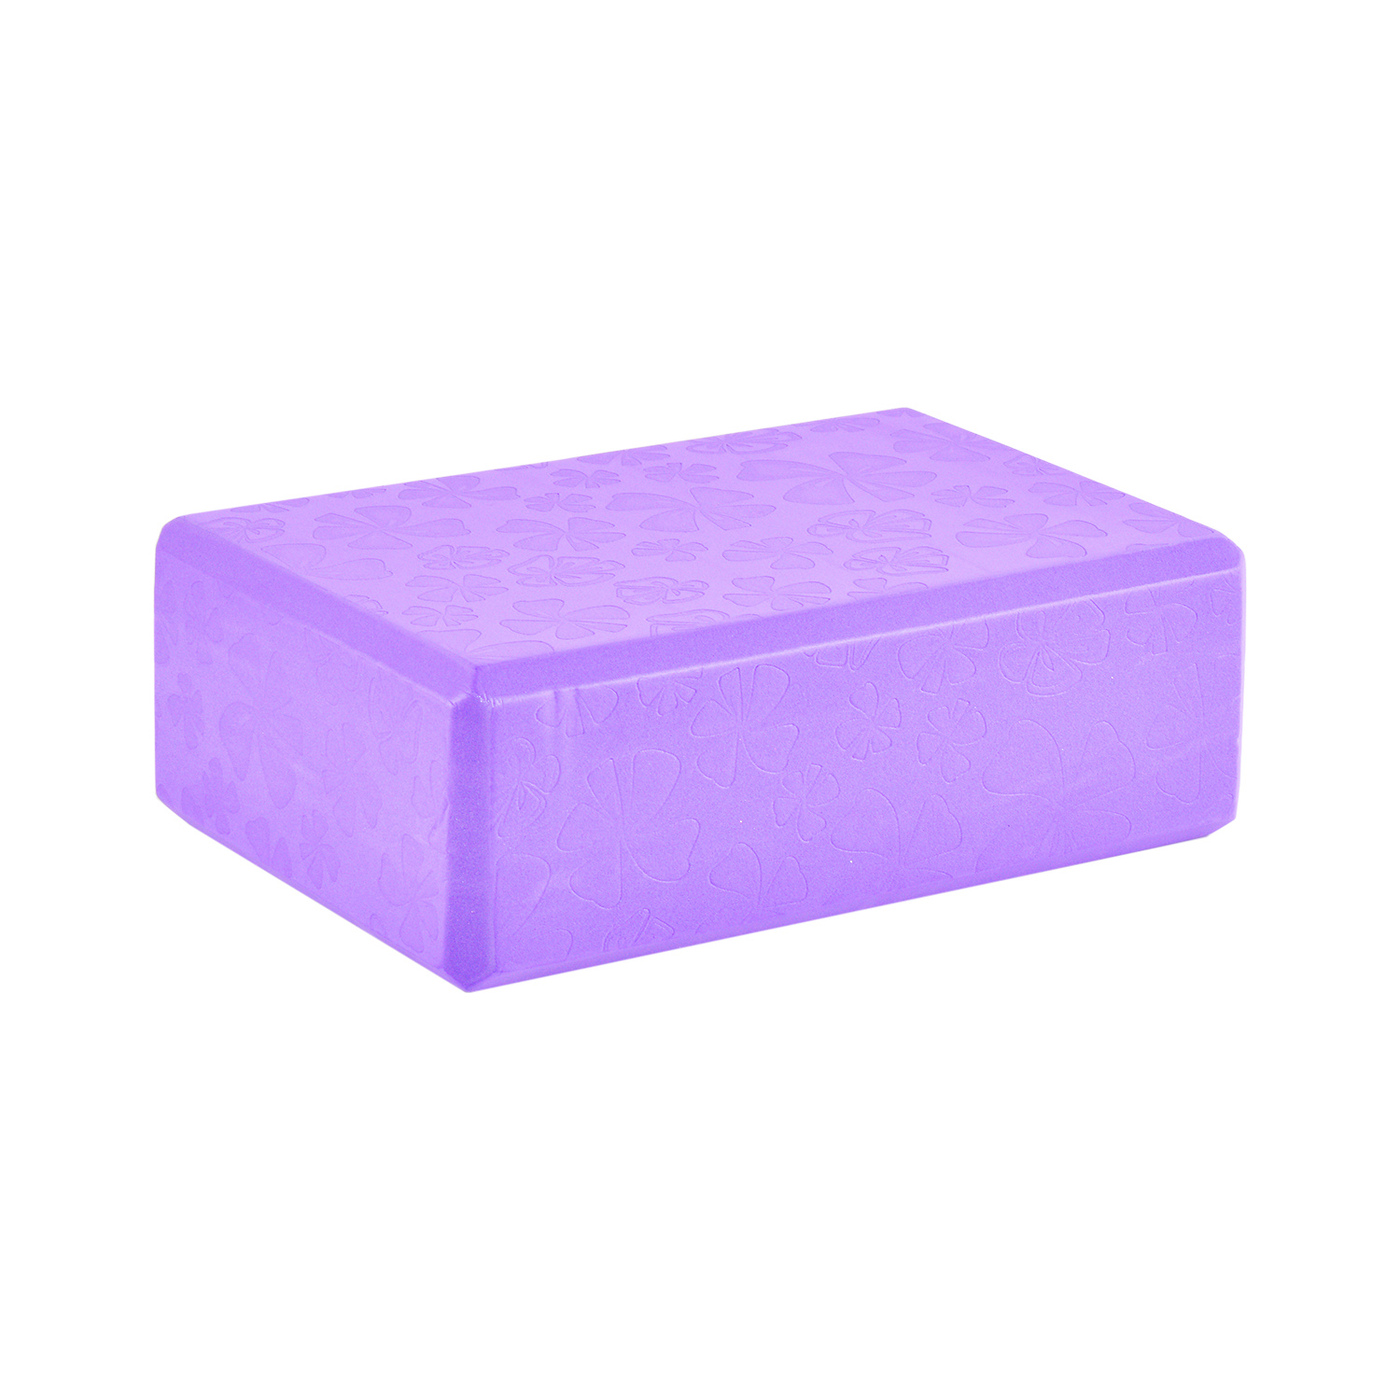 Блок для йоги BodyForm BF-YB03 Фиолетовый